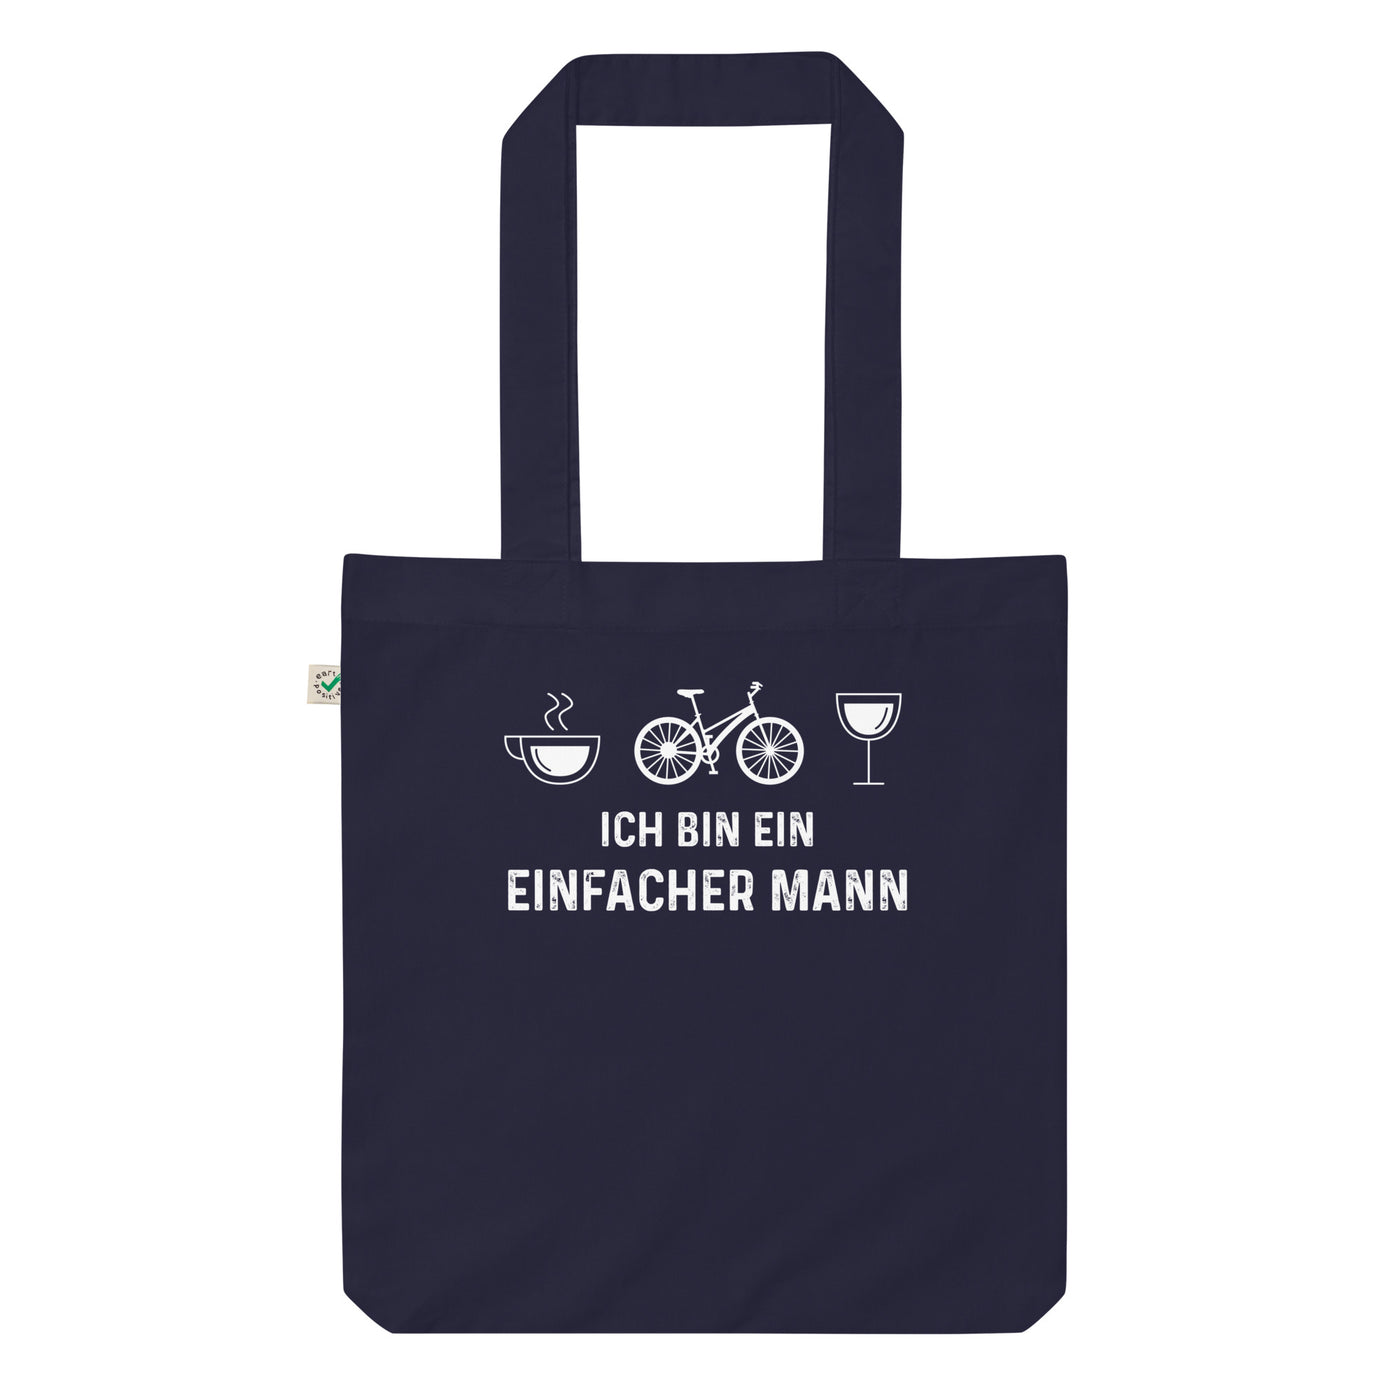 Ich Bin Ein Einfacher Mann - Organic Einkaufstasche fahrrad